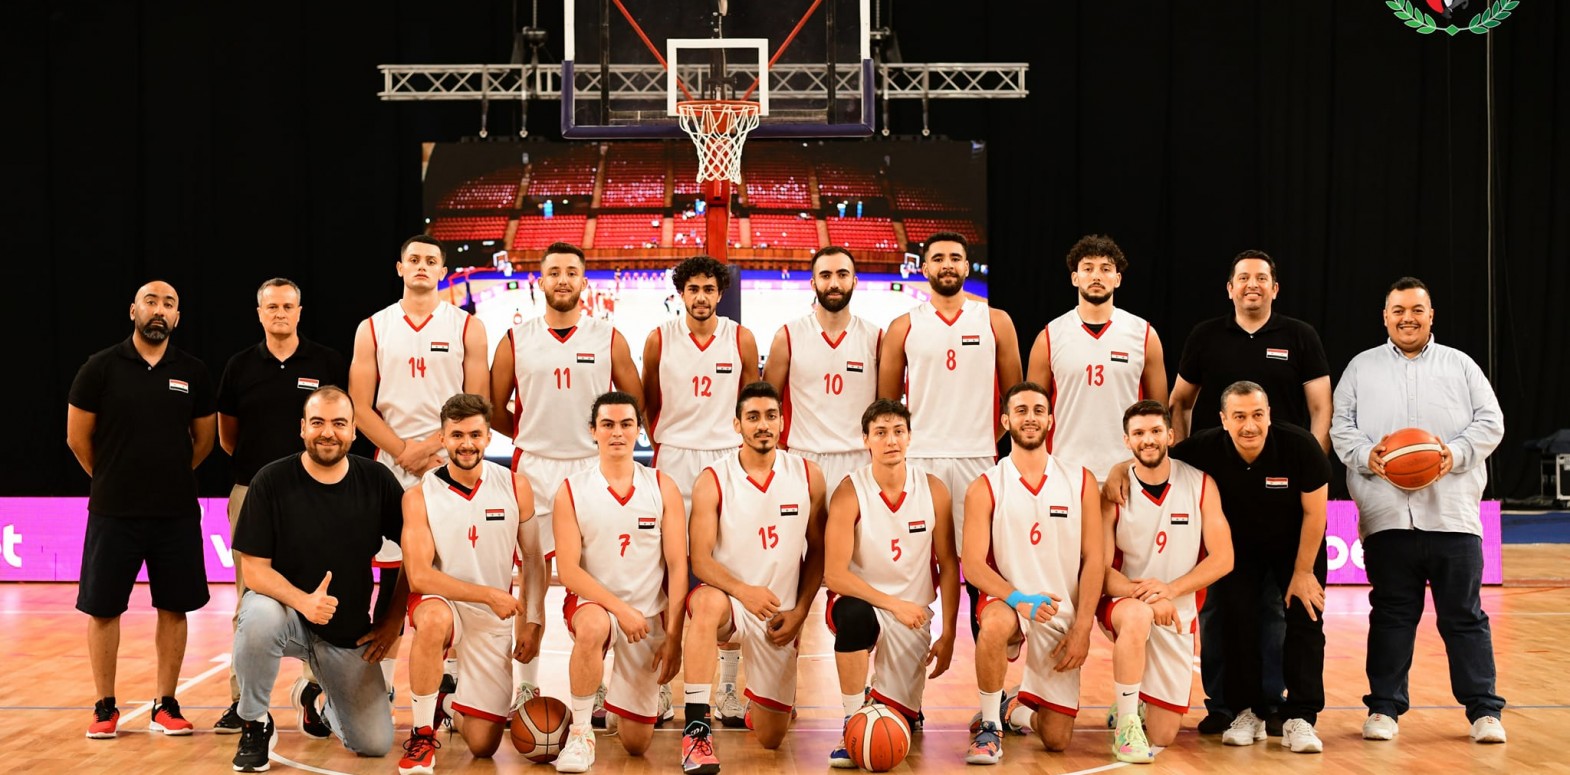 ما حقيقة فوز منتخب سوريا لكرة السلة على منتخب أميركا في "بطولة سادا الدولية"؟